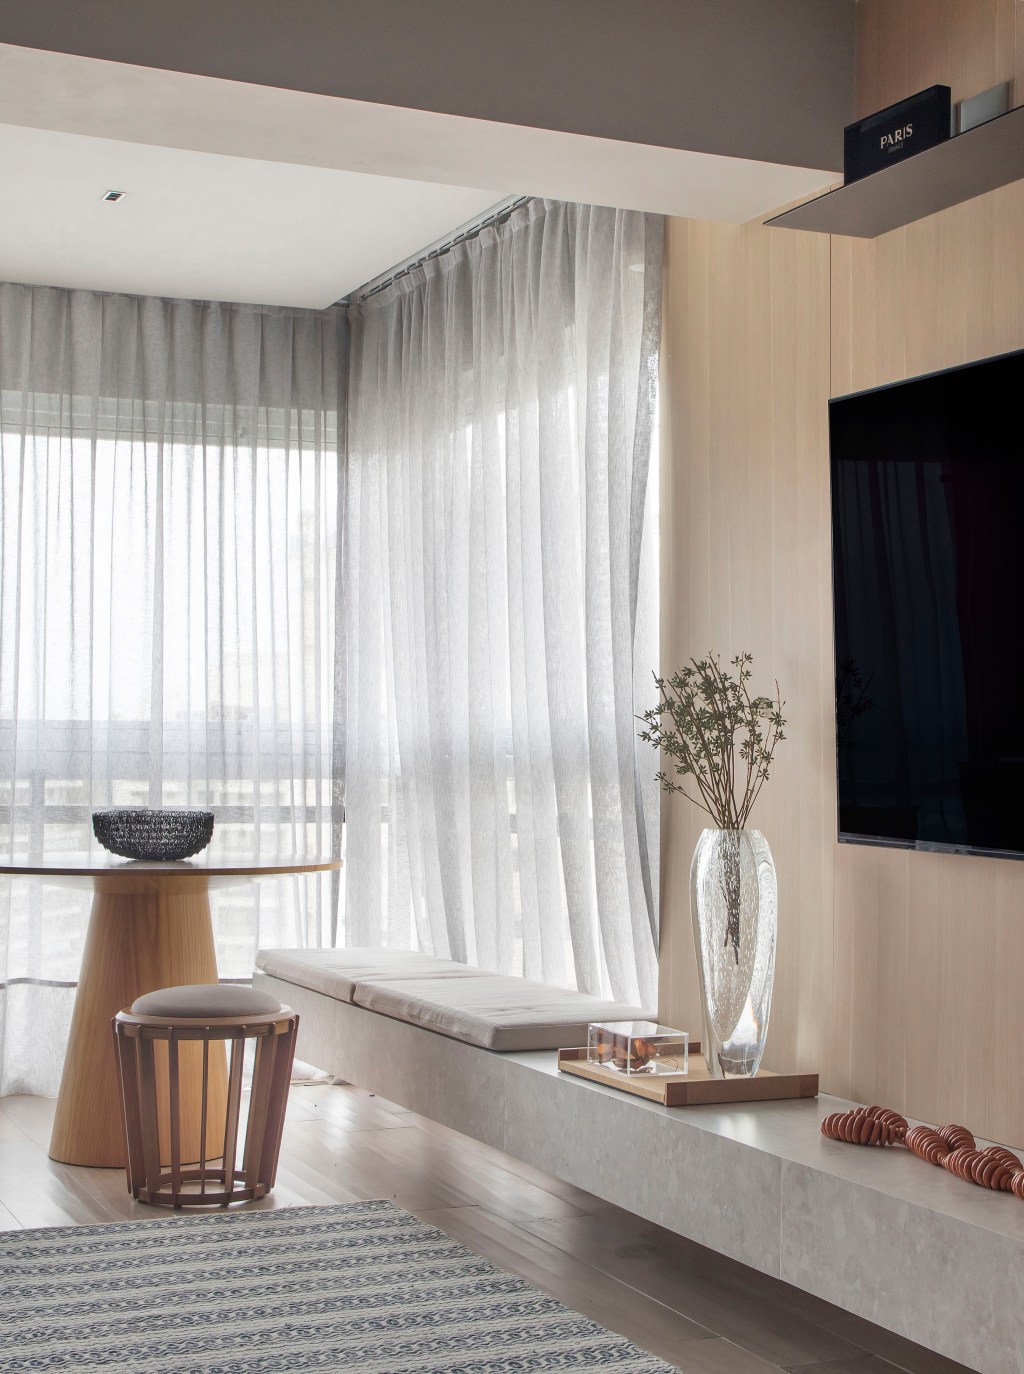 Preto e terracota marcam o décor deste apartamento masculino de 110 m². Projeto de Up3 Arquitetura. Na foto, sala com painel de TV de madeira e cortina de linho.